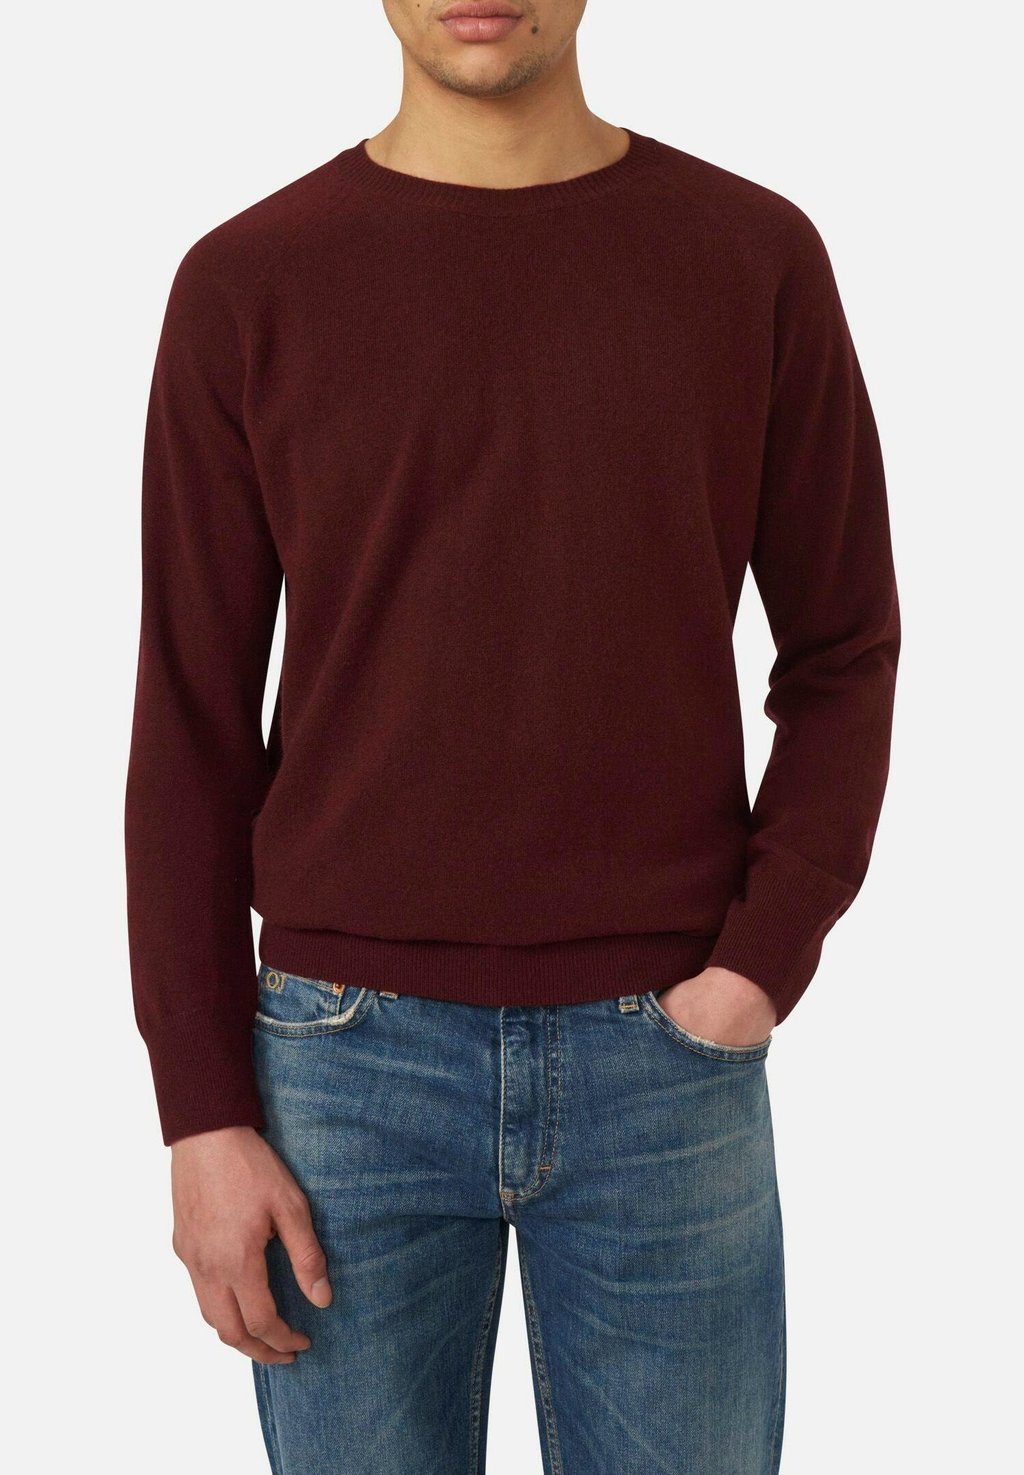 вязаный свитер patton oscar jacobson цвет dark grey Вязаный свитер GUSTAF ROUNDNECK Oscar Jacobson, цвет zinfandel red